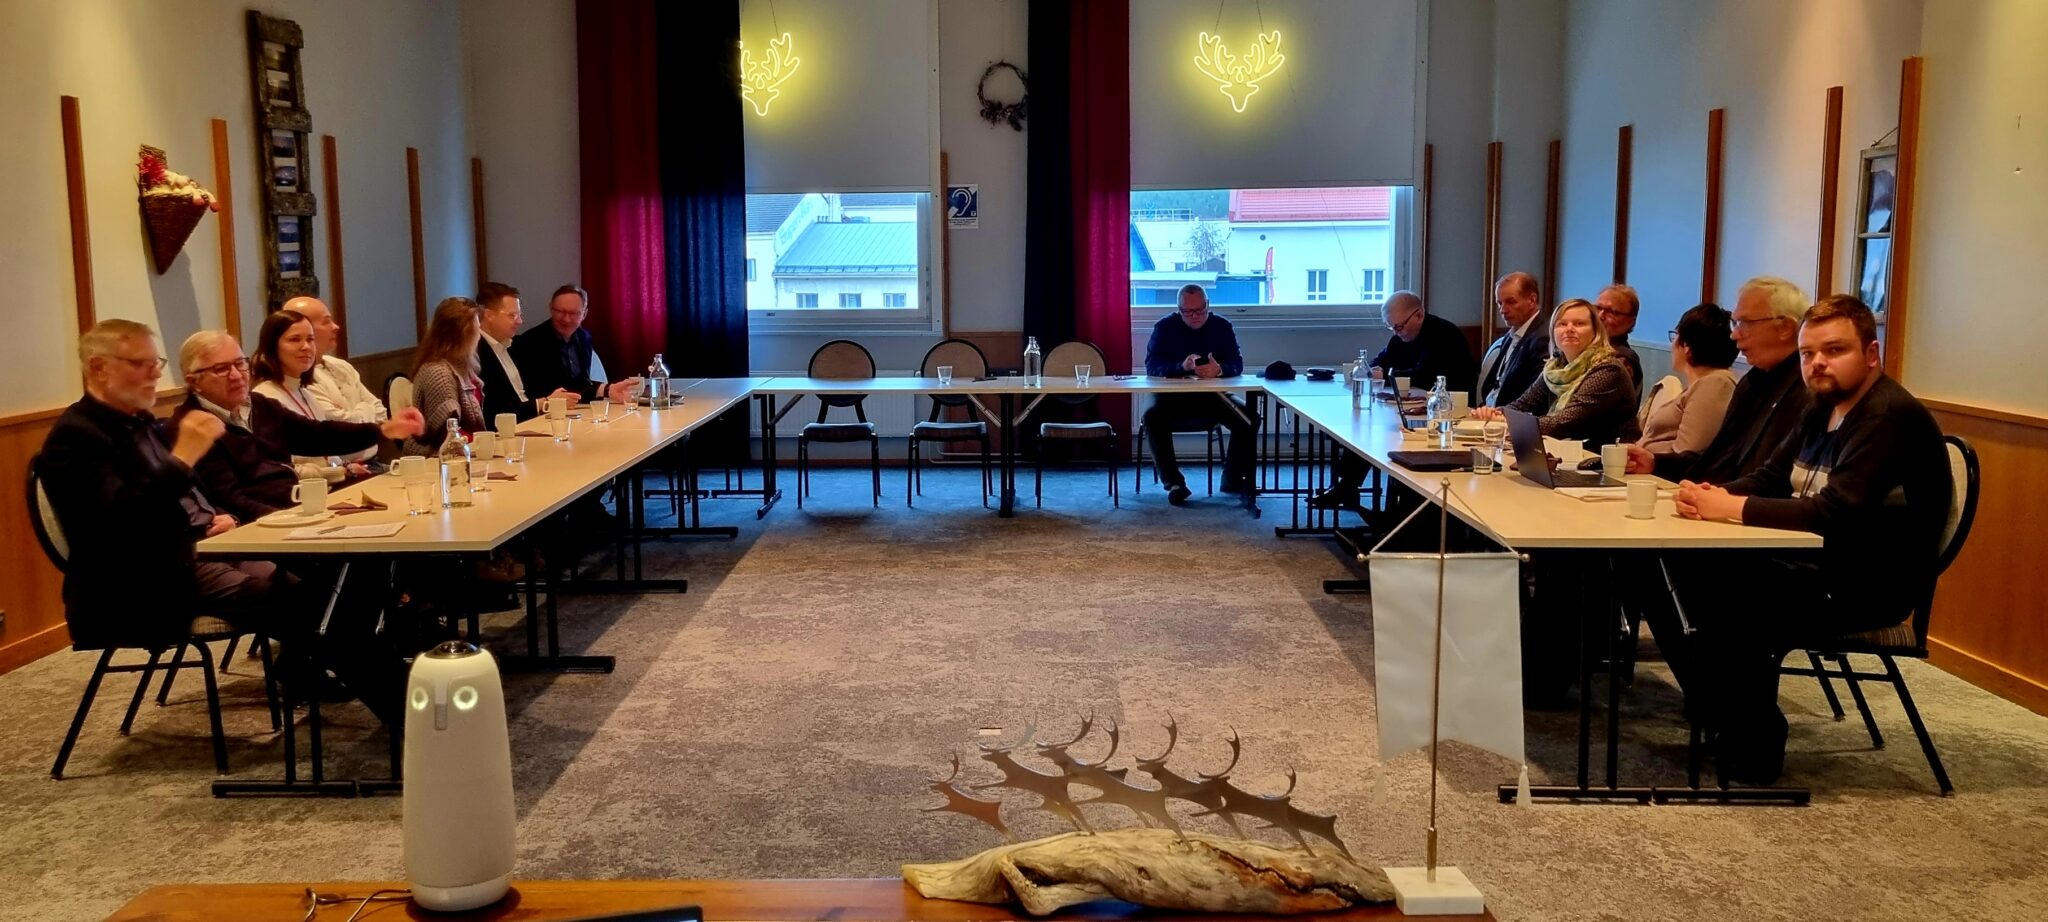 Rovaniemen Rotaryklubin ja Rovaniemi Santa Claus Rotaryklubin jäseniä Kuru-kabinetissa. Hybridikokoukseen pystyi osallistumaan myös verkon kautta ja "pöllömme" piti huolen videokuvasta ja äänestä.